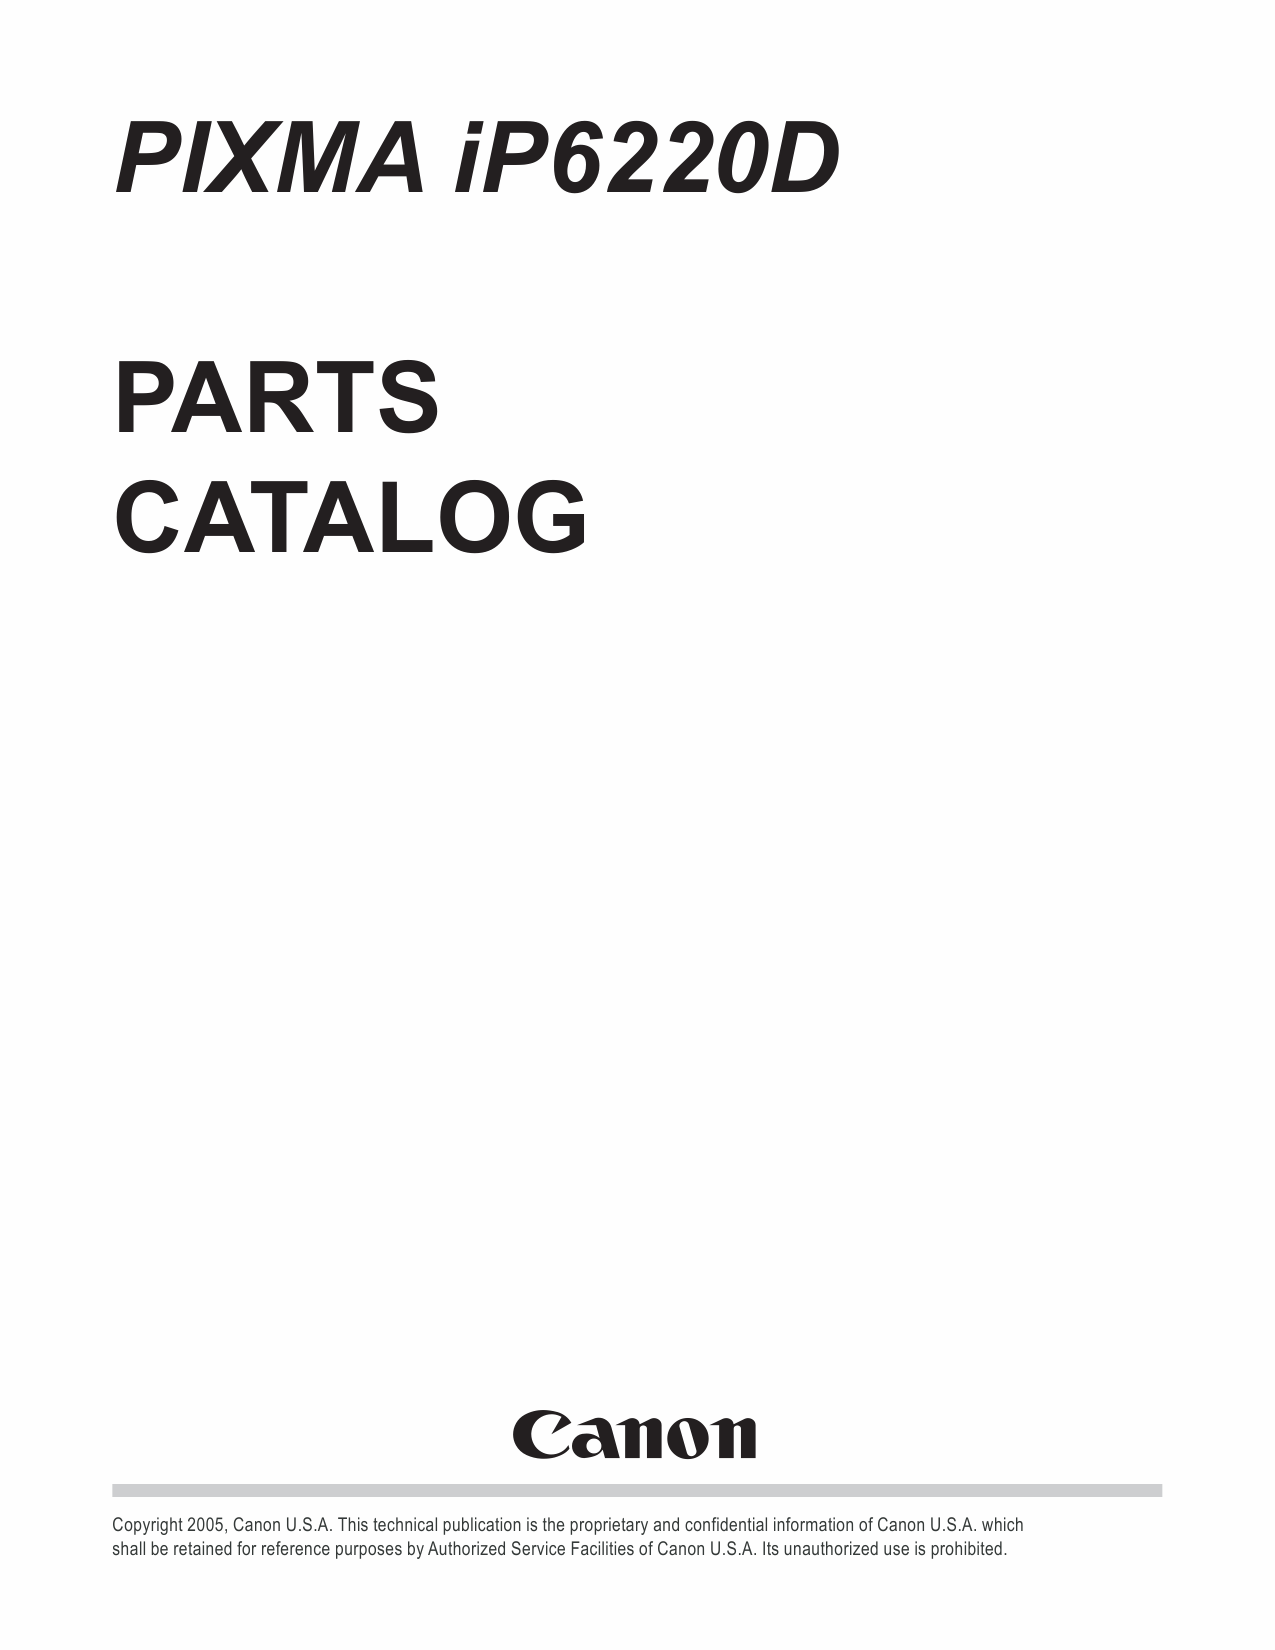 Canon PIXMA iP6220D Parts Catalog-1